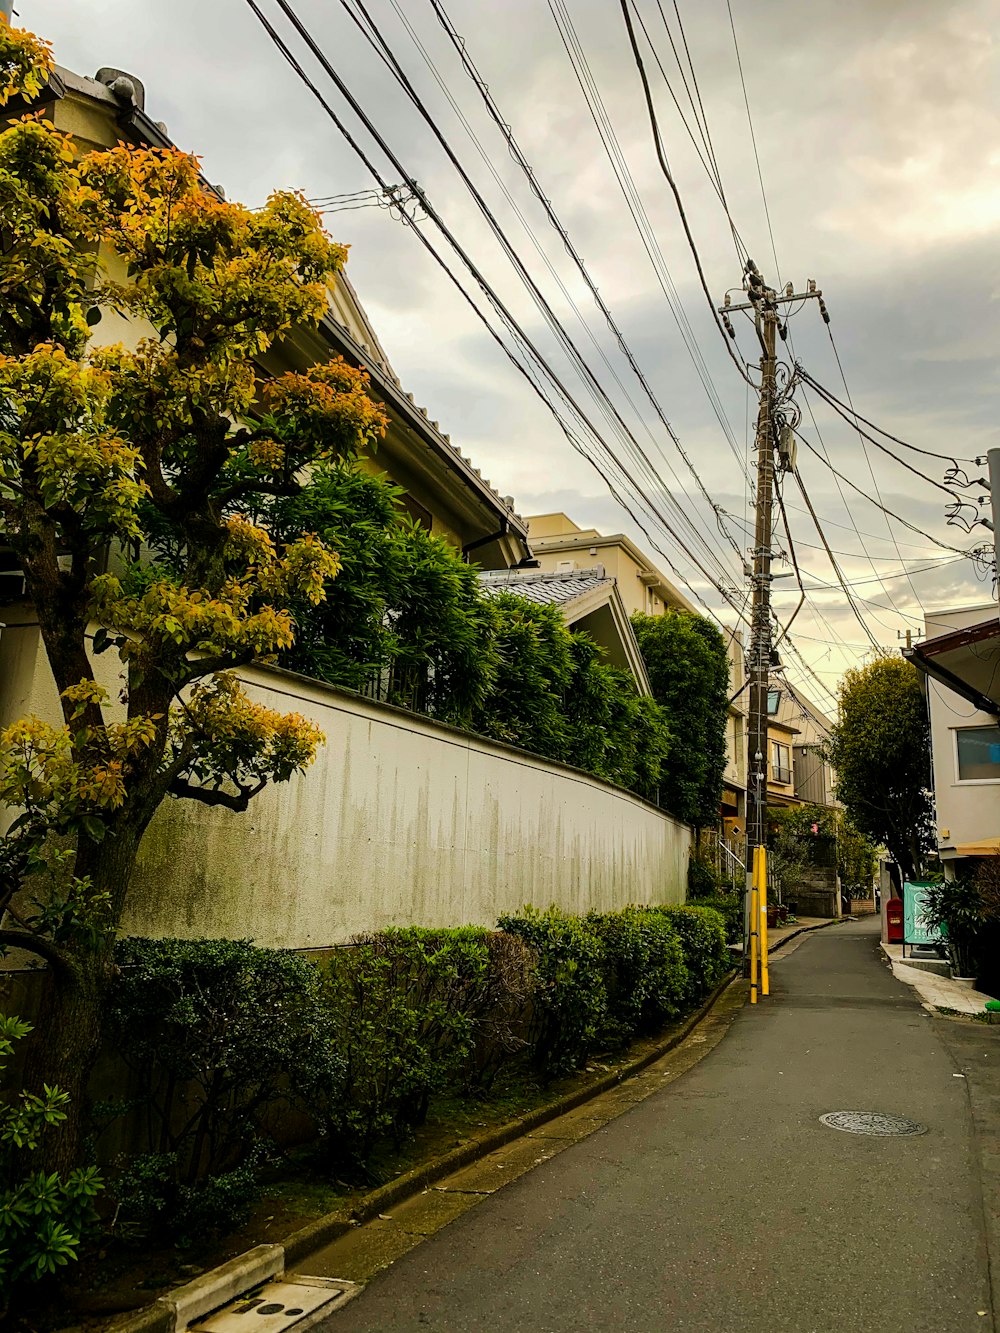 Una calle bordeada de casas y líneas eléctricas